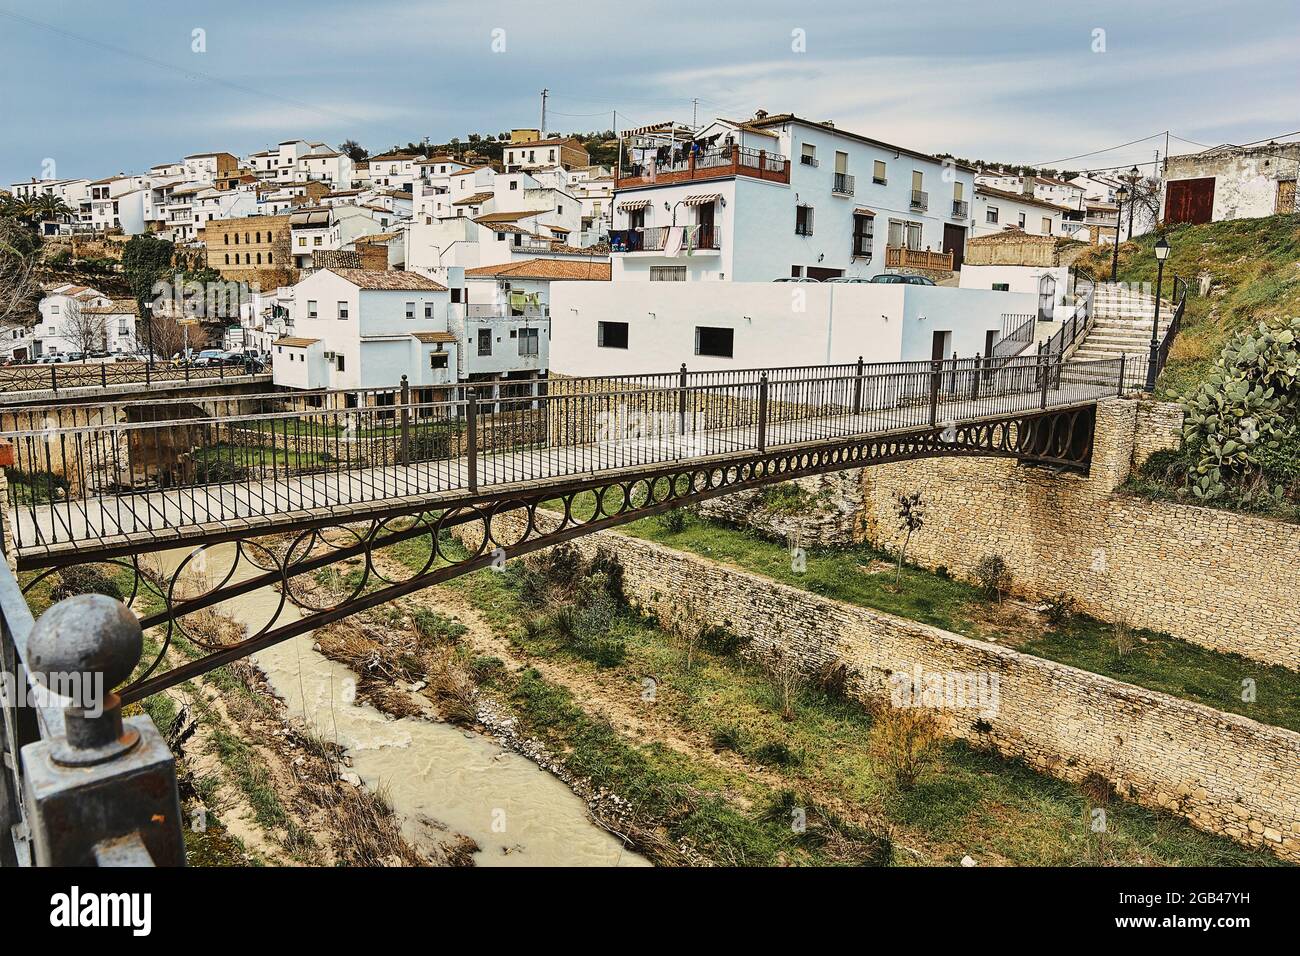 Ponte di legno nella città di Setenil de las Bodegas, uno dei più bei villaggi bianchi in Andalusia, Spagna Foto Stock